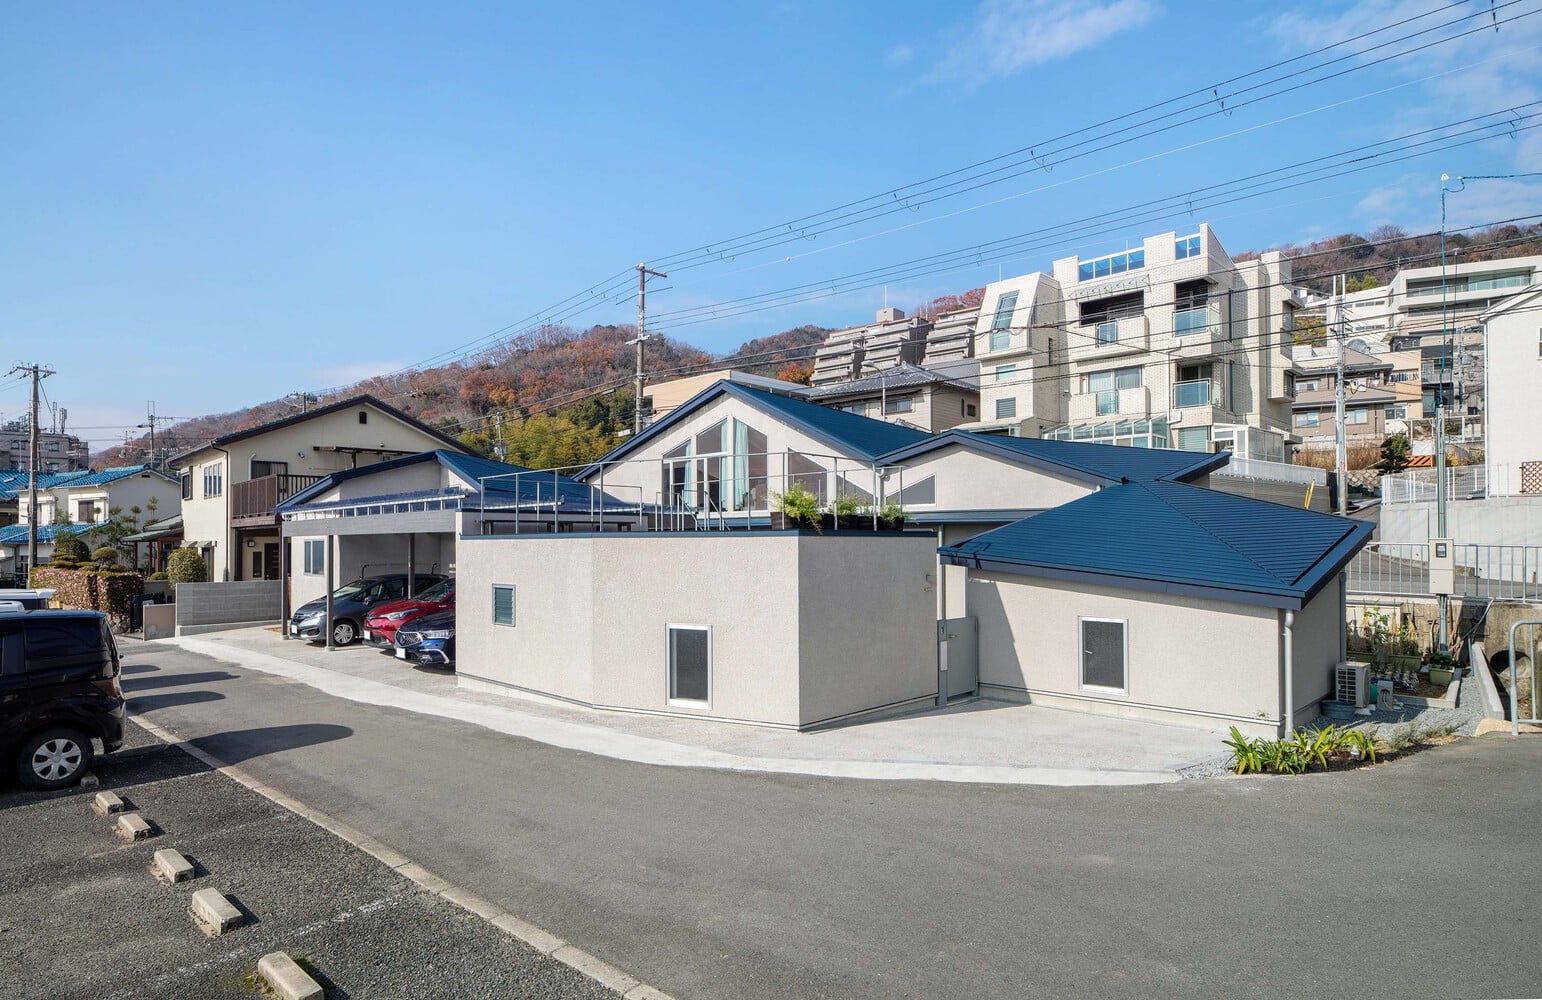 Bentuk fasad rumah yang menyatu dengan latar belakang pemandangan lereng pegunungan di Osaka